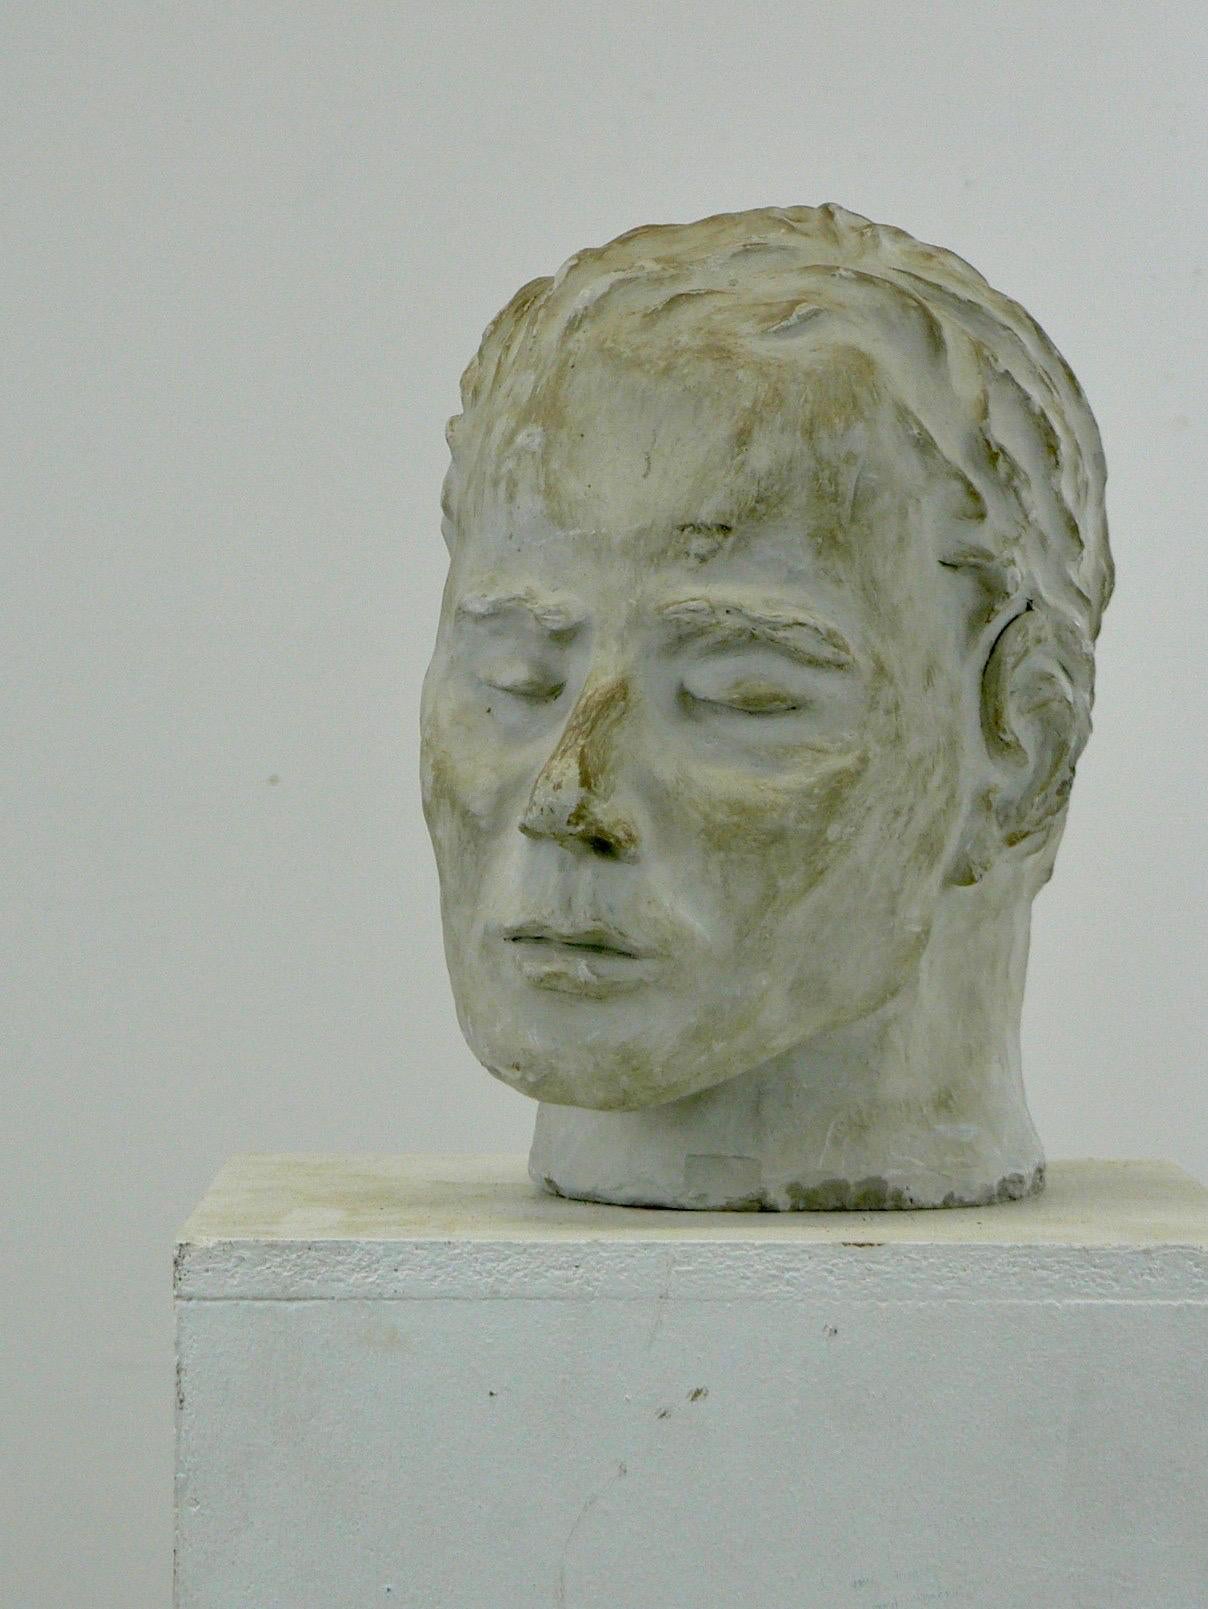 Eine raffinierte Gipsskulptur, die den Kopf eines Mannes mit geschlossenen Augen darstellt und in den 1950er Jahren in Frankreich hergestellt wurde. Sie weist eine herrliche Patina auf, die ihren Charme und ihre Raffinesse noch verstärkt.

Diese